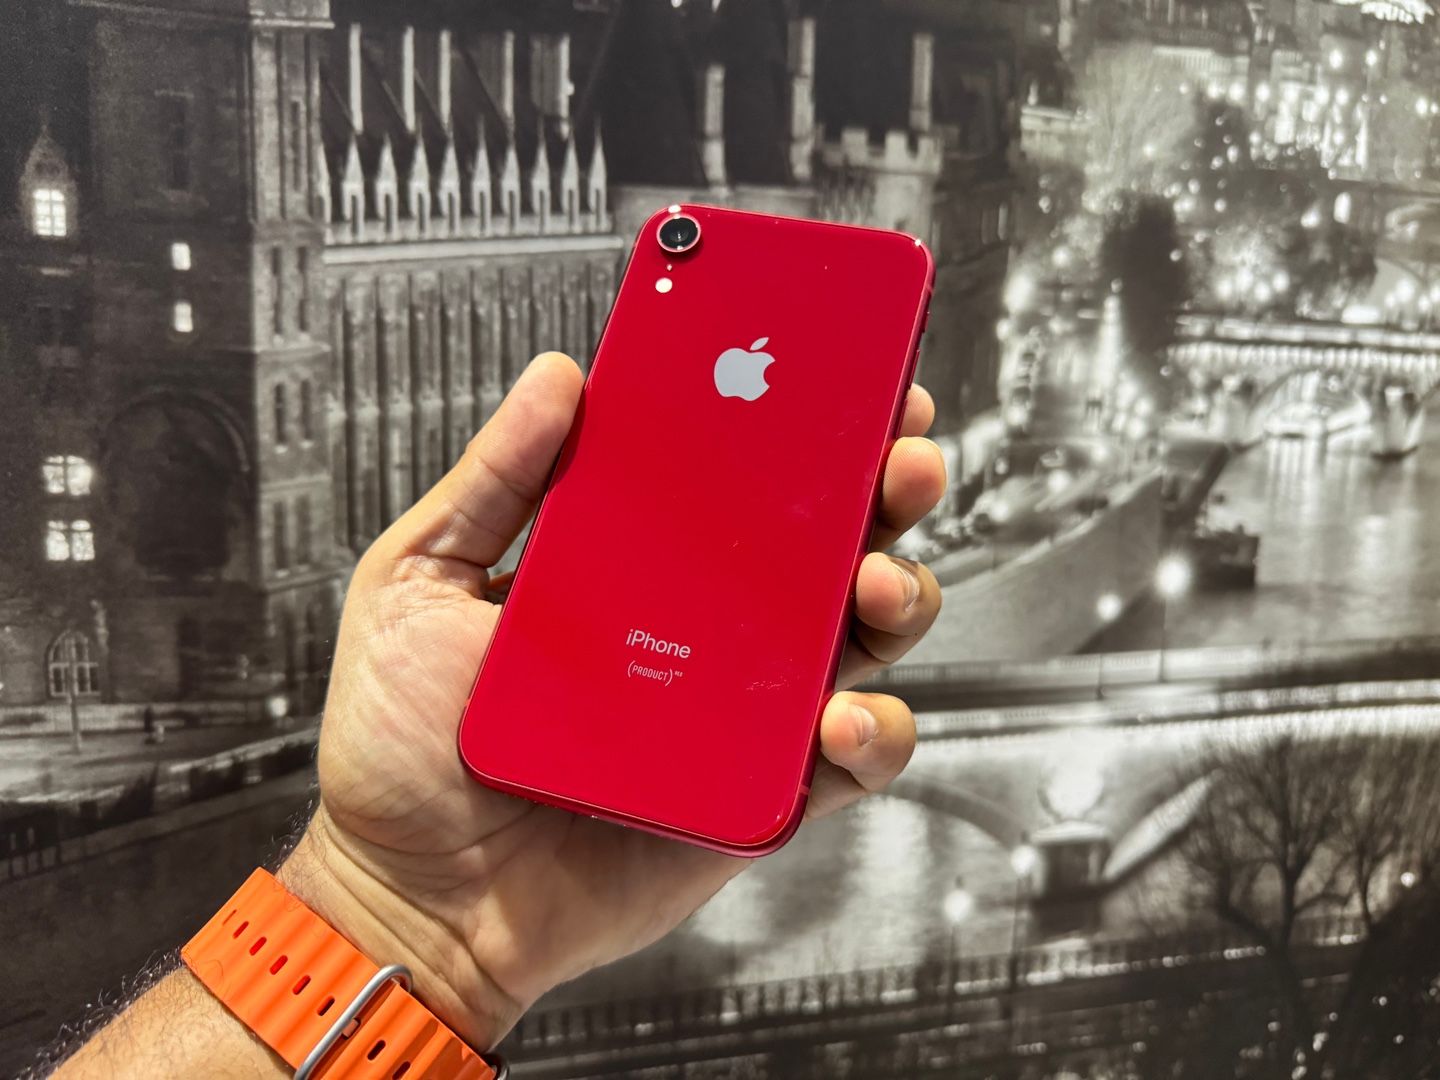 celulares y tabletas - iPhone XR 64GB Red (Product) Usado, Desbloqueado, Garantia, RD$ 13,400 | TIENDA!